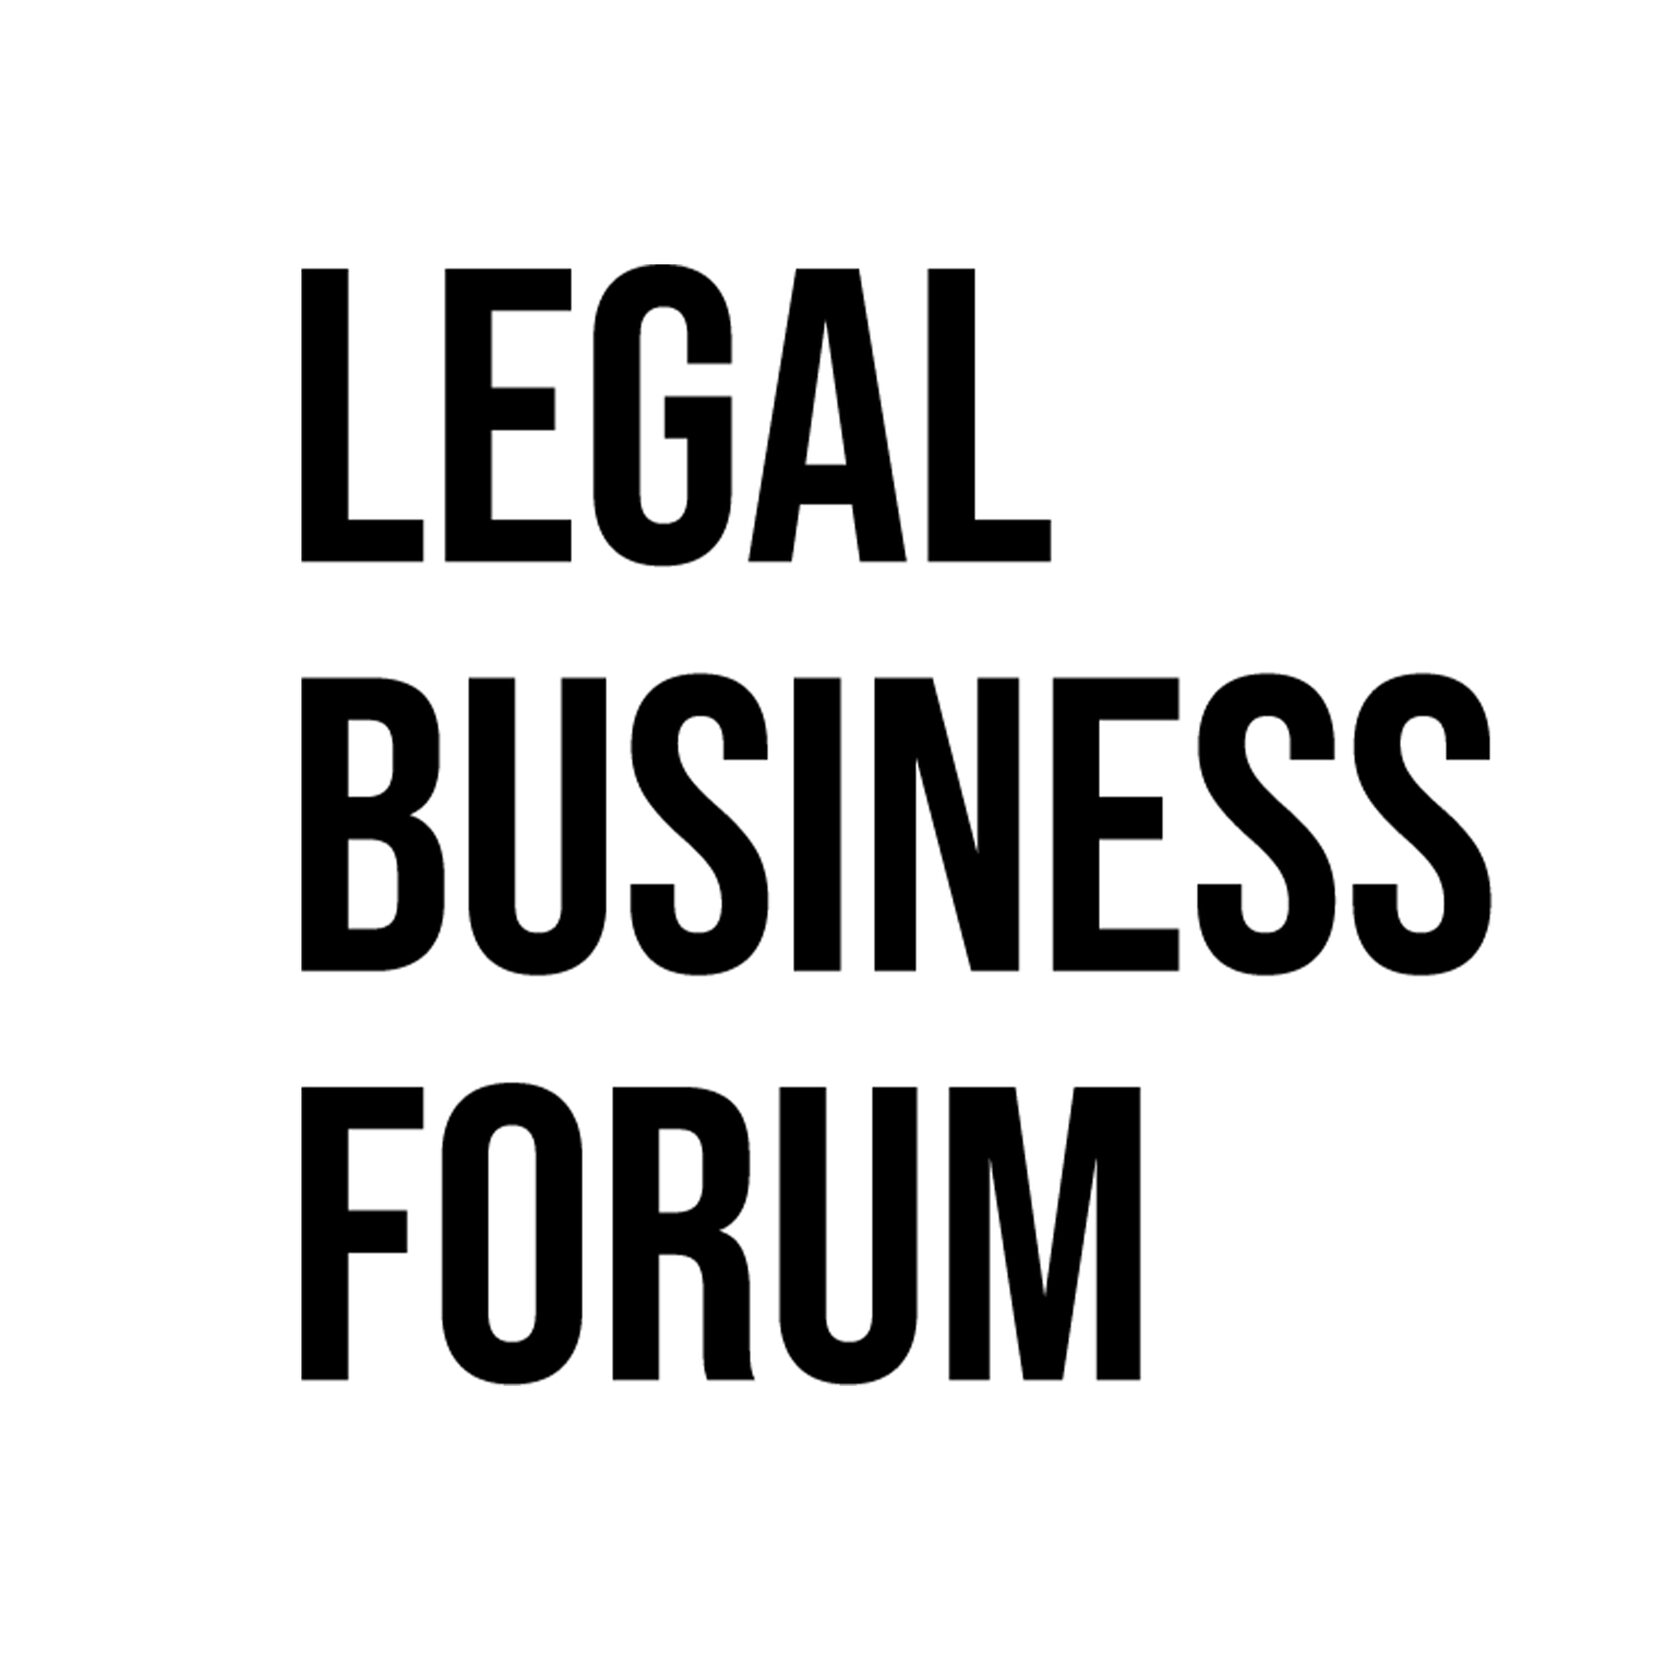 Legal forum